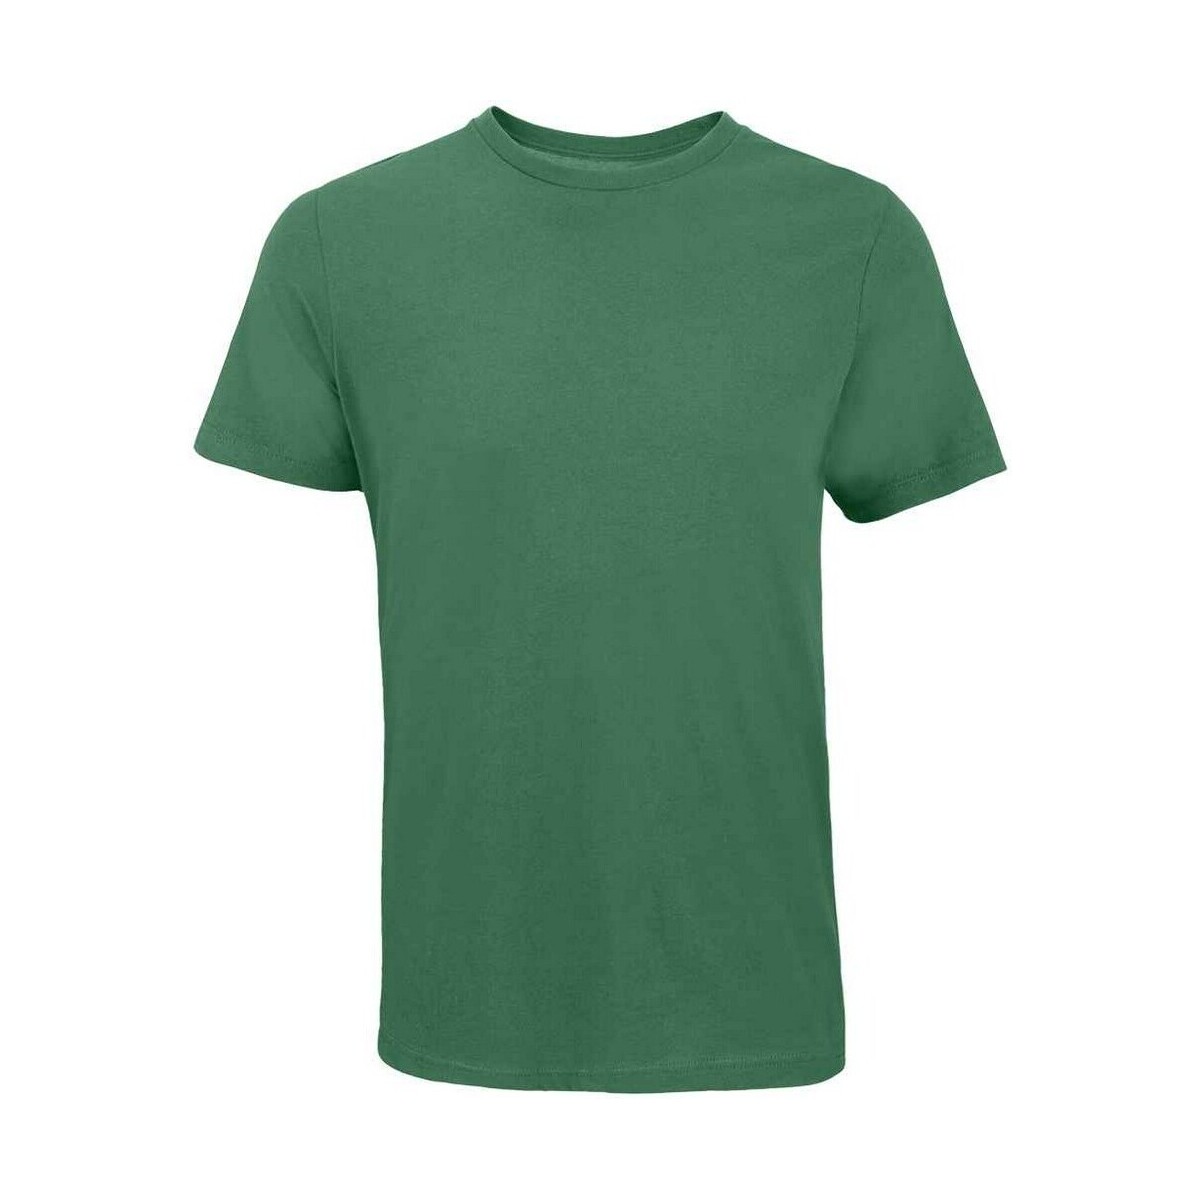 textil Camisetas manga larga Sols Tuner Verde